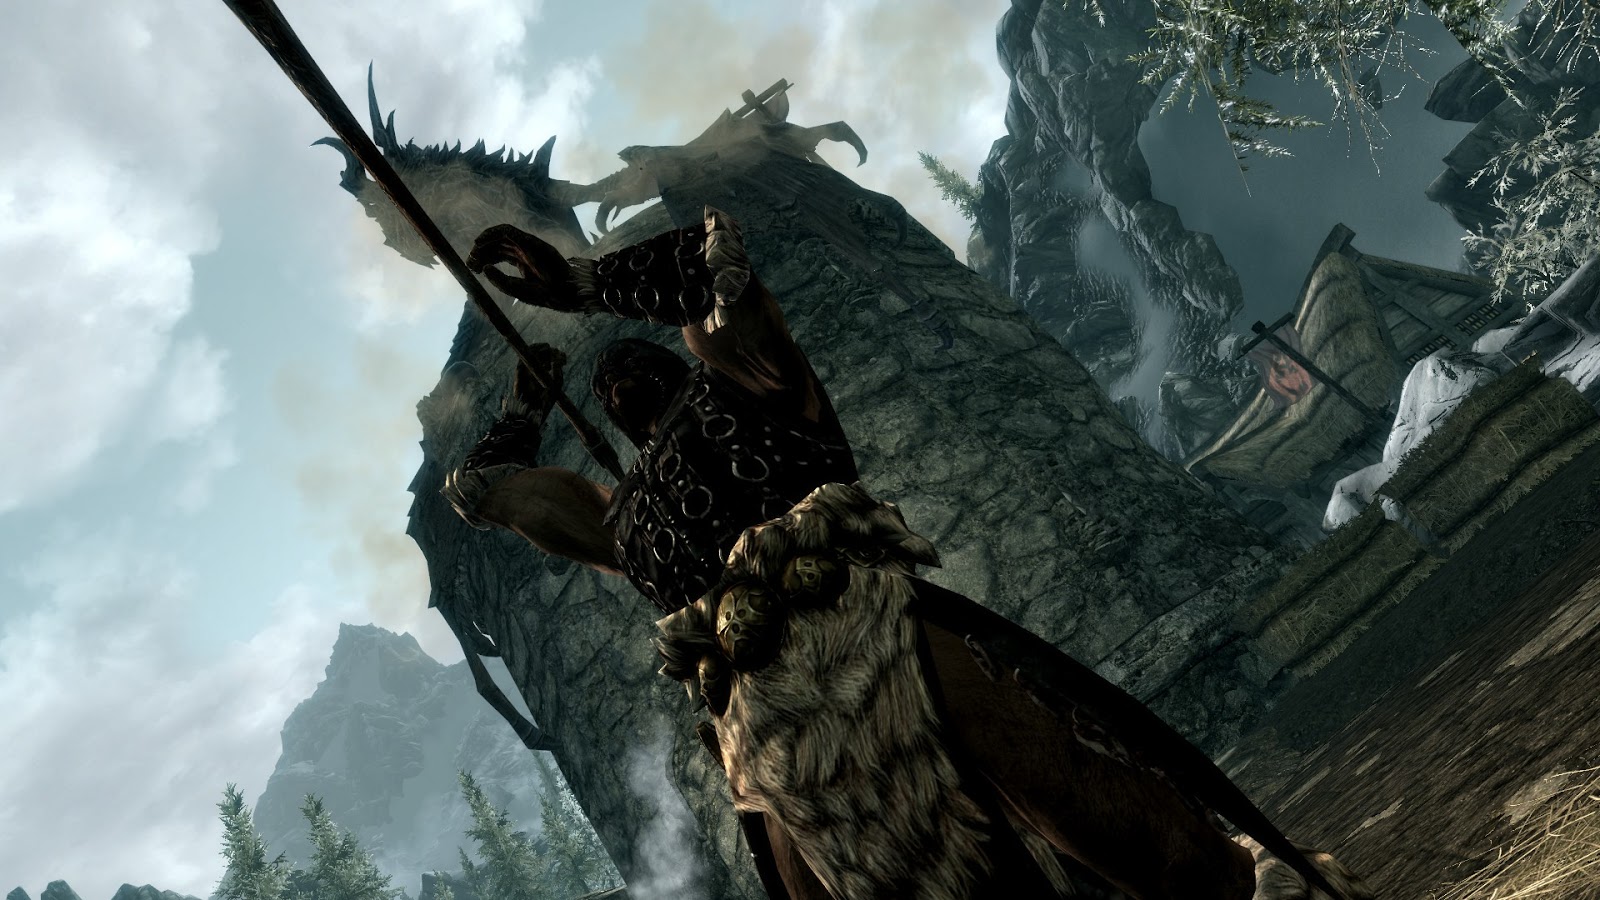 Morrowind Elder Scrolls Jogo Ps4 Vídeo Game Rpg Ação Físico